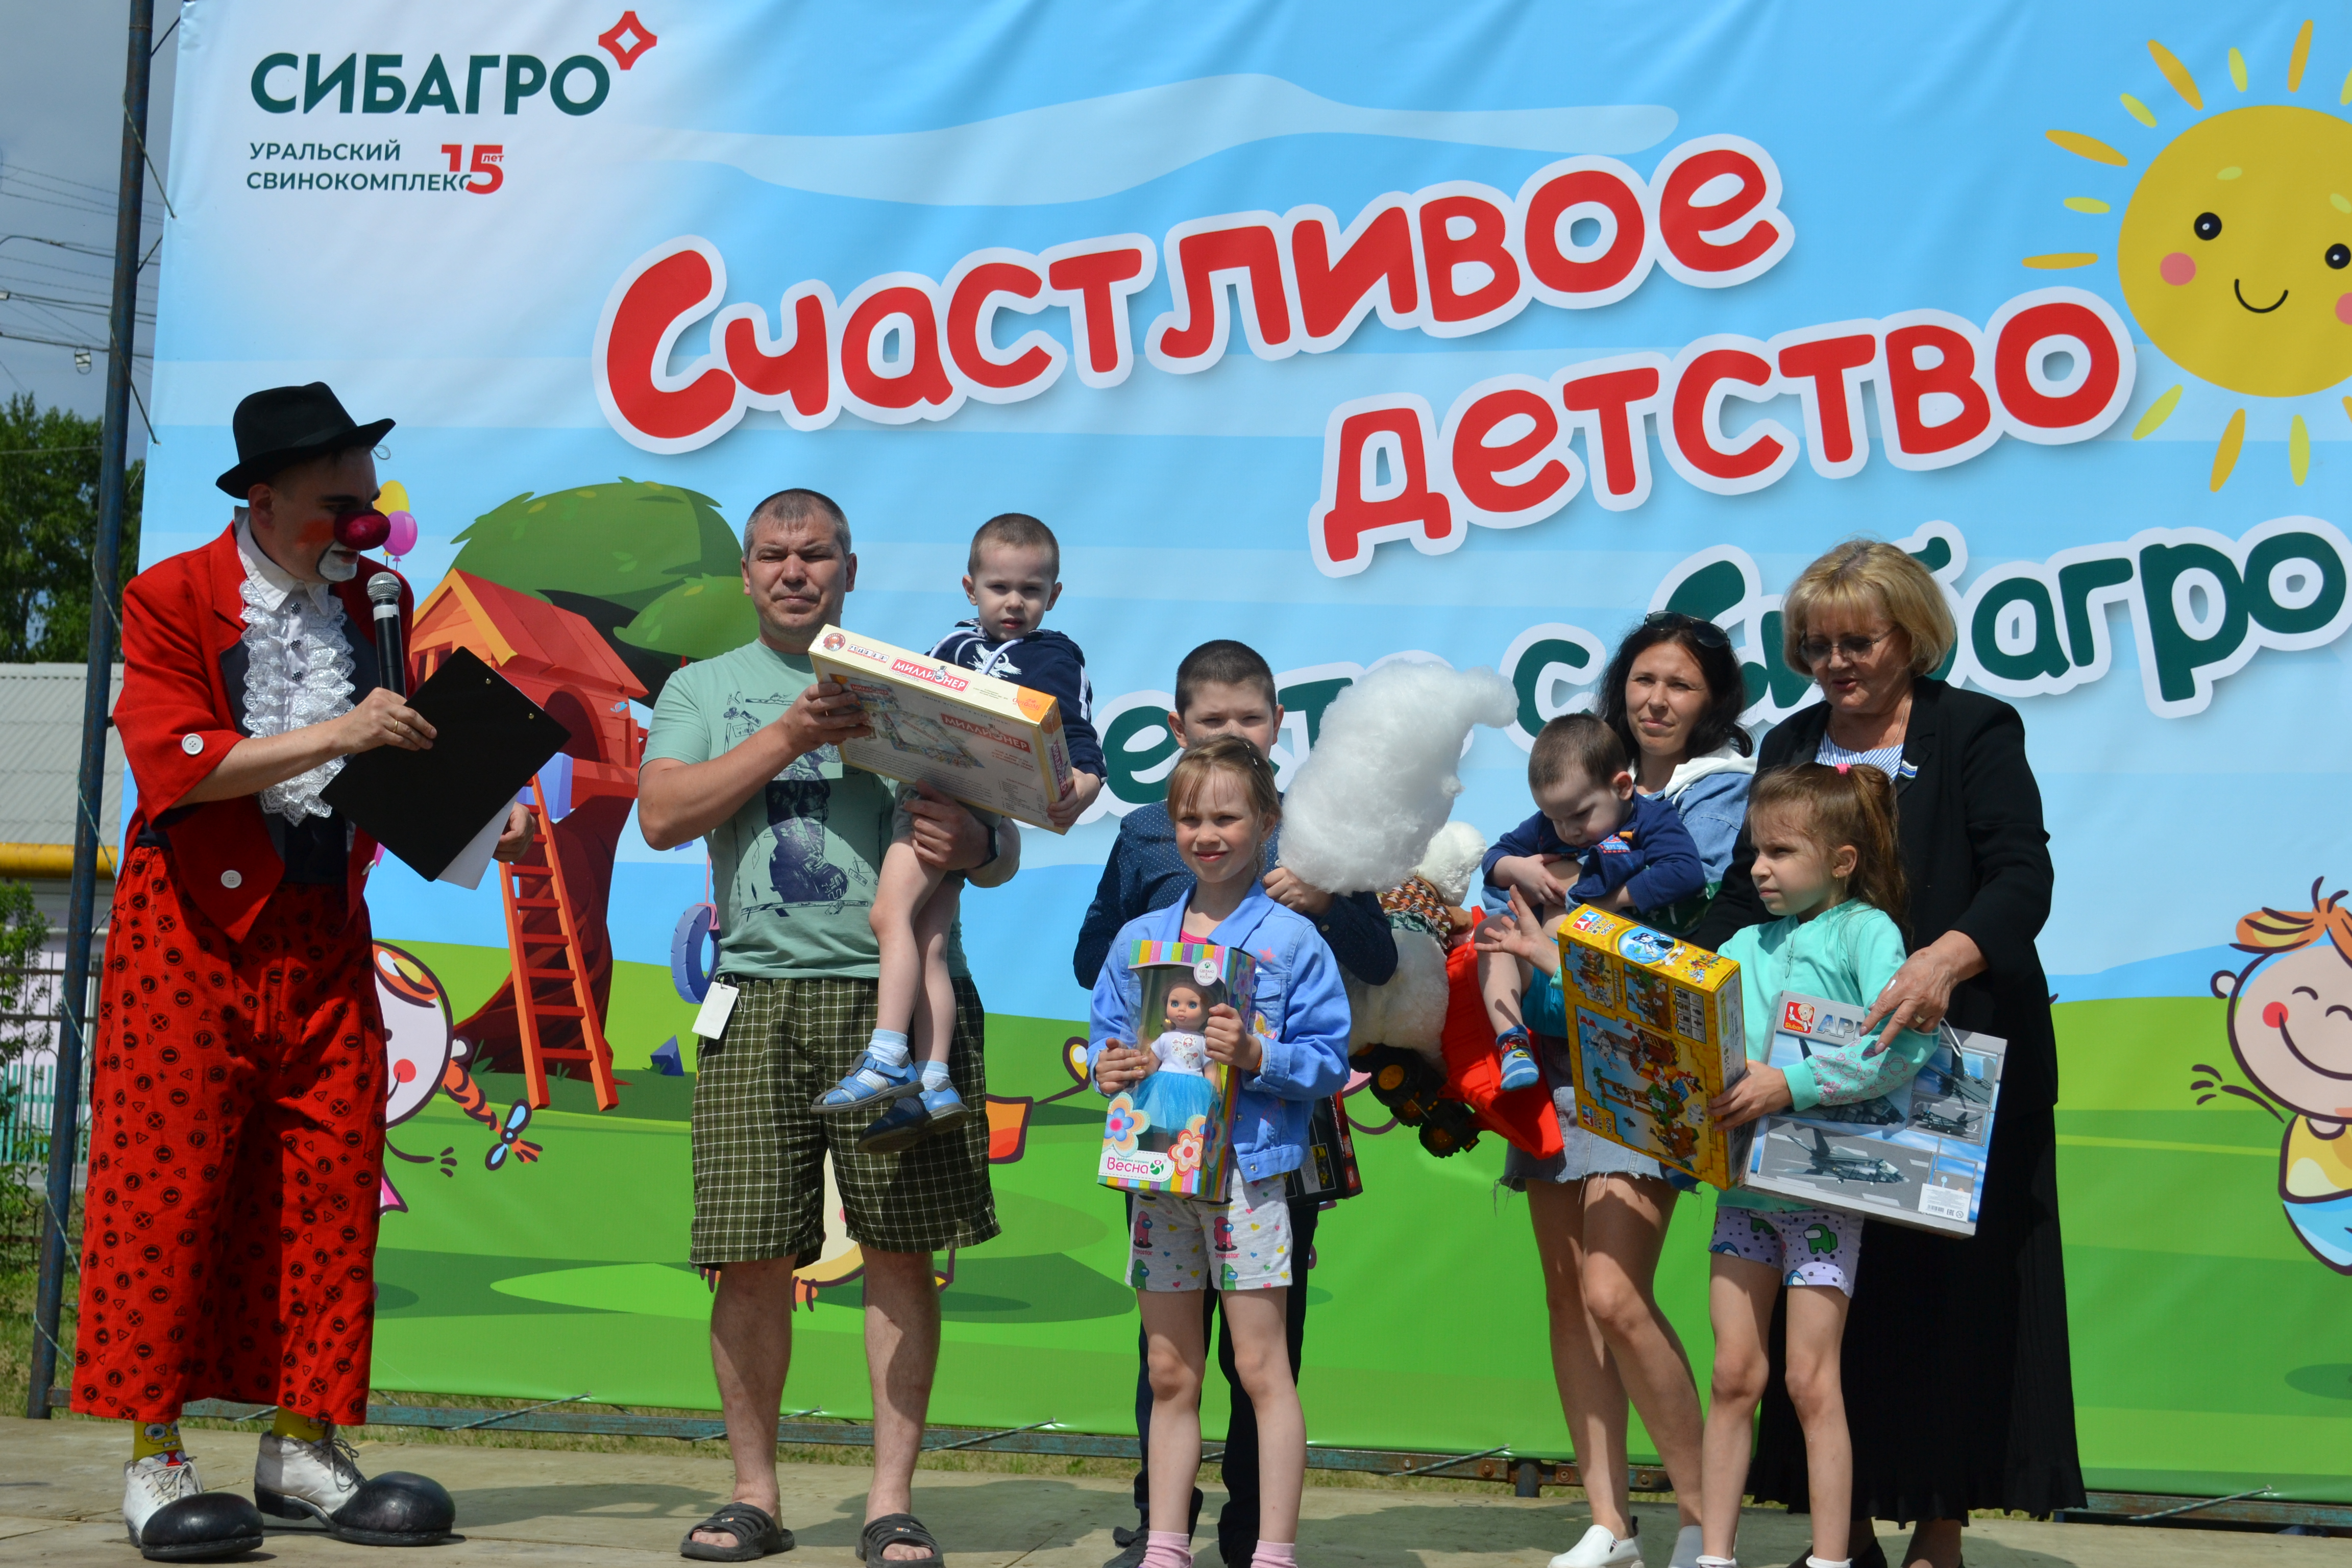 Людмила Бабушкина подарила подарки детям из многодетных семей, а юным артистам вручила билеты в цирк